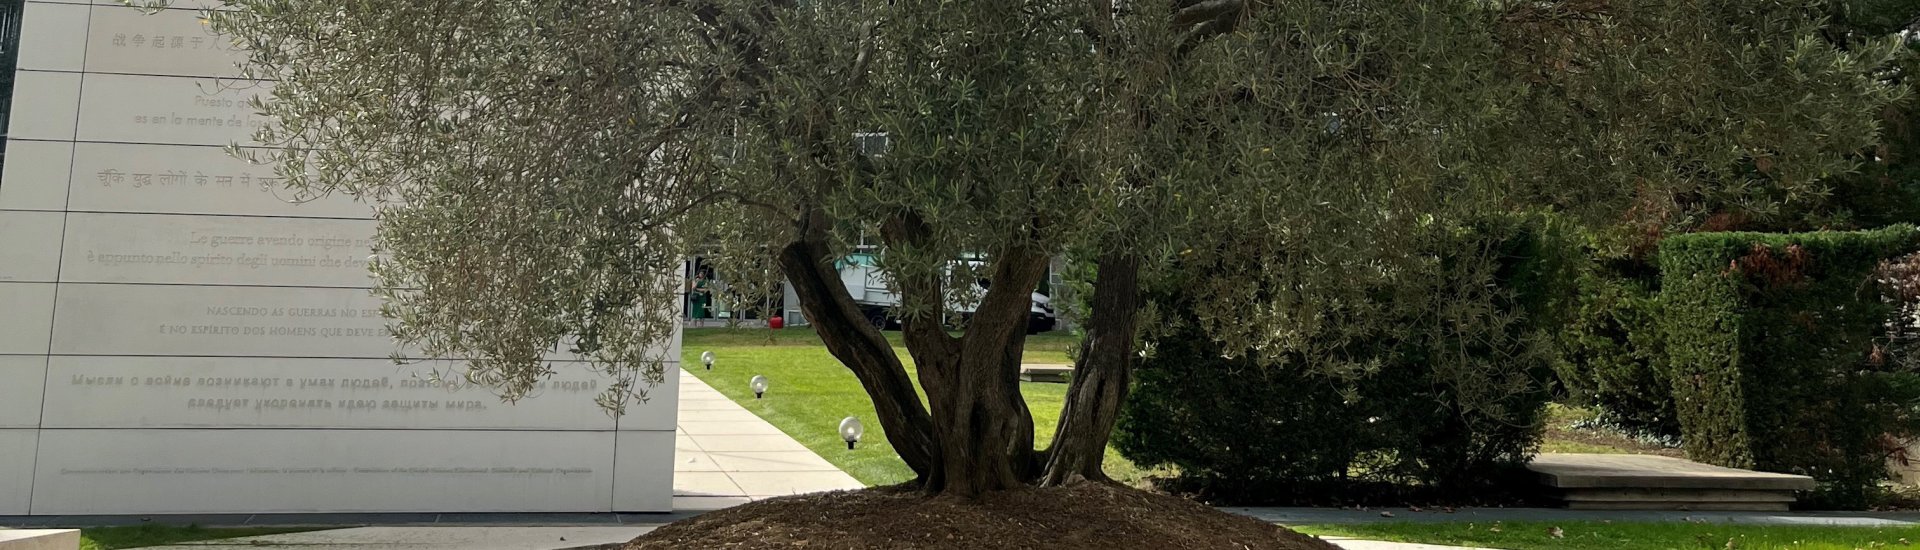 De olijfboom als vredessymbool. Geplant in de tuin van het Unesco Secretariaat in Parijs. (Foto: Marielies Schelhaas)